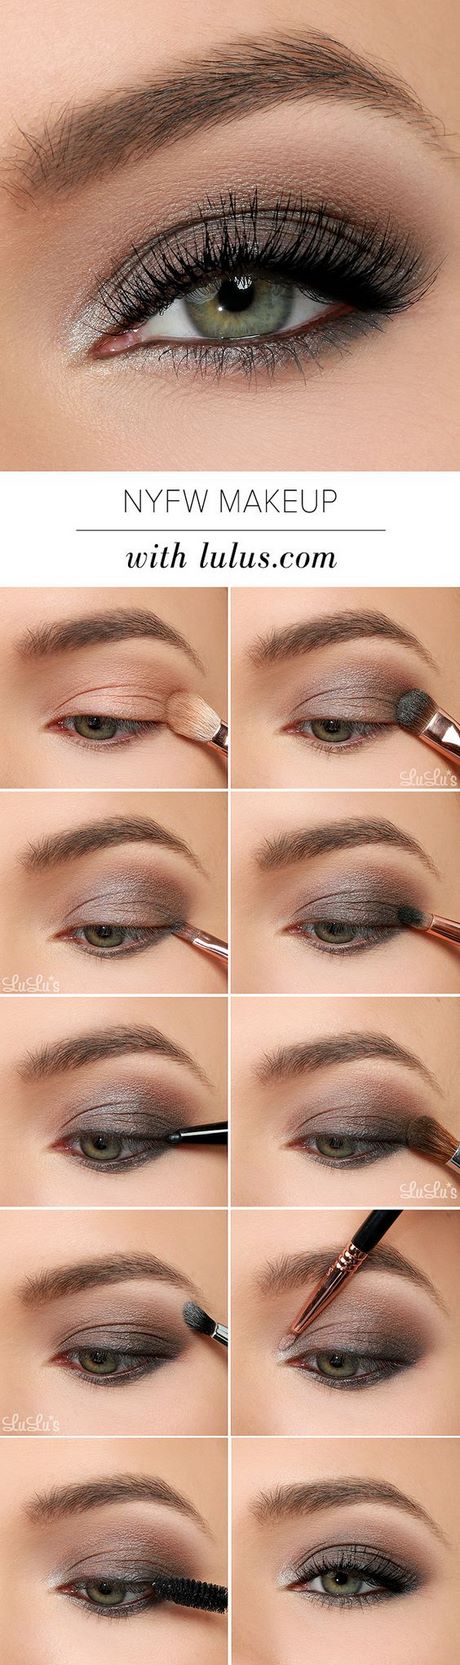 Smokey eye make-up tutorial groene ogen